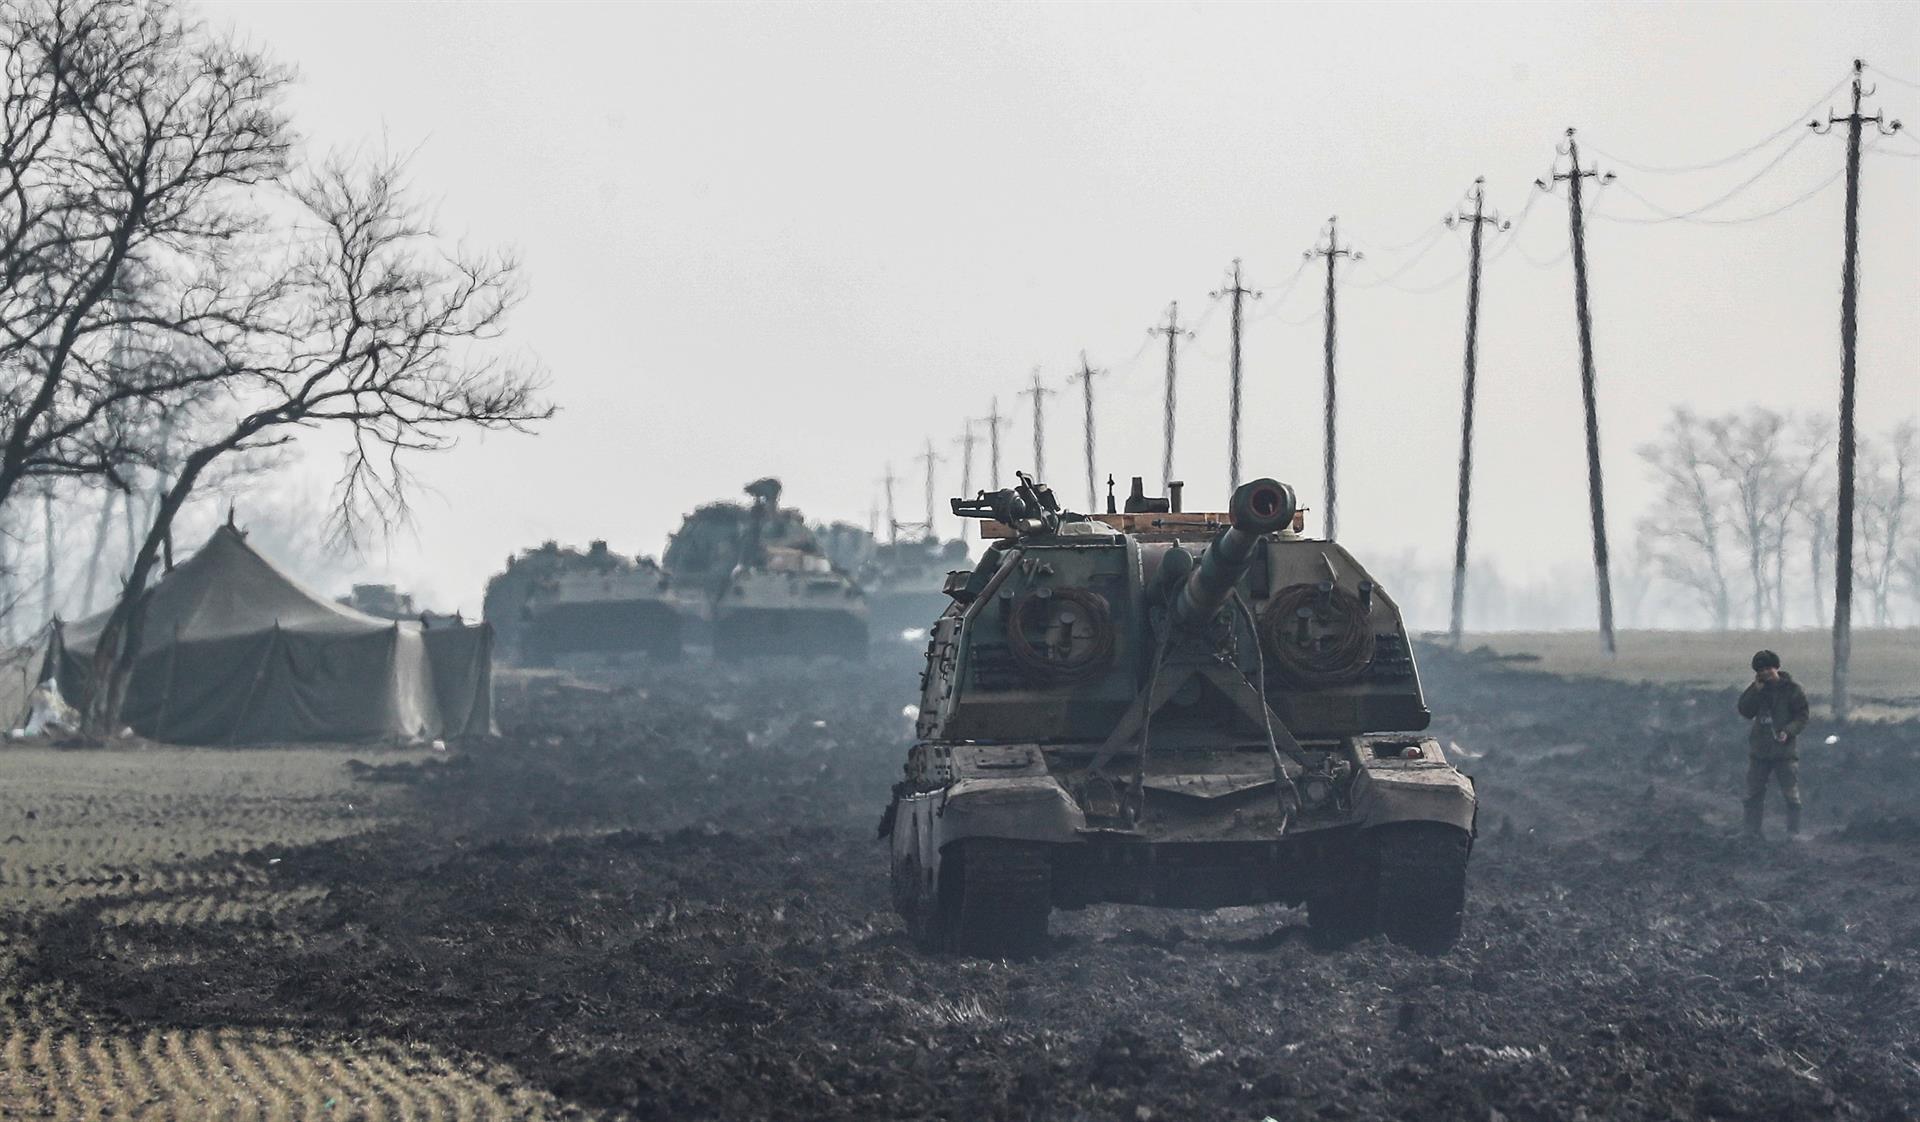 Tancs russos ahir a la regió russa de Rostov, veïna d'Ucraïna. Fotografia d'Iuri Kotxekov